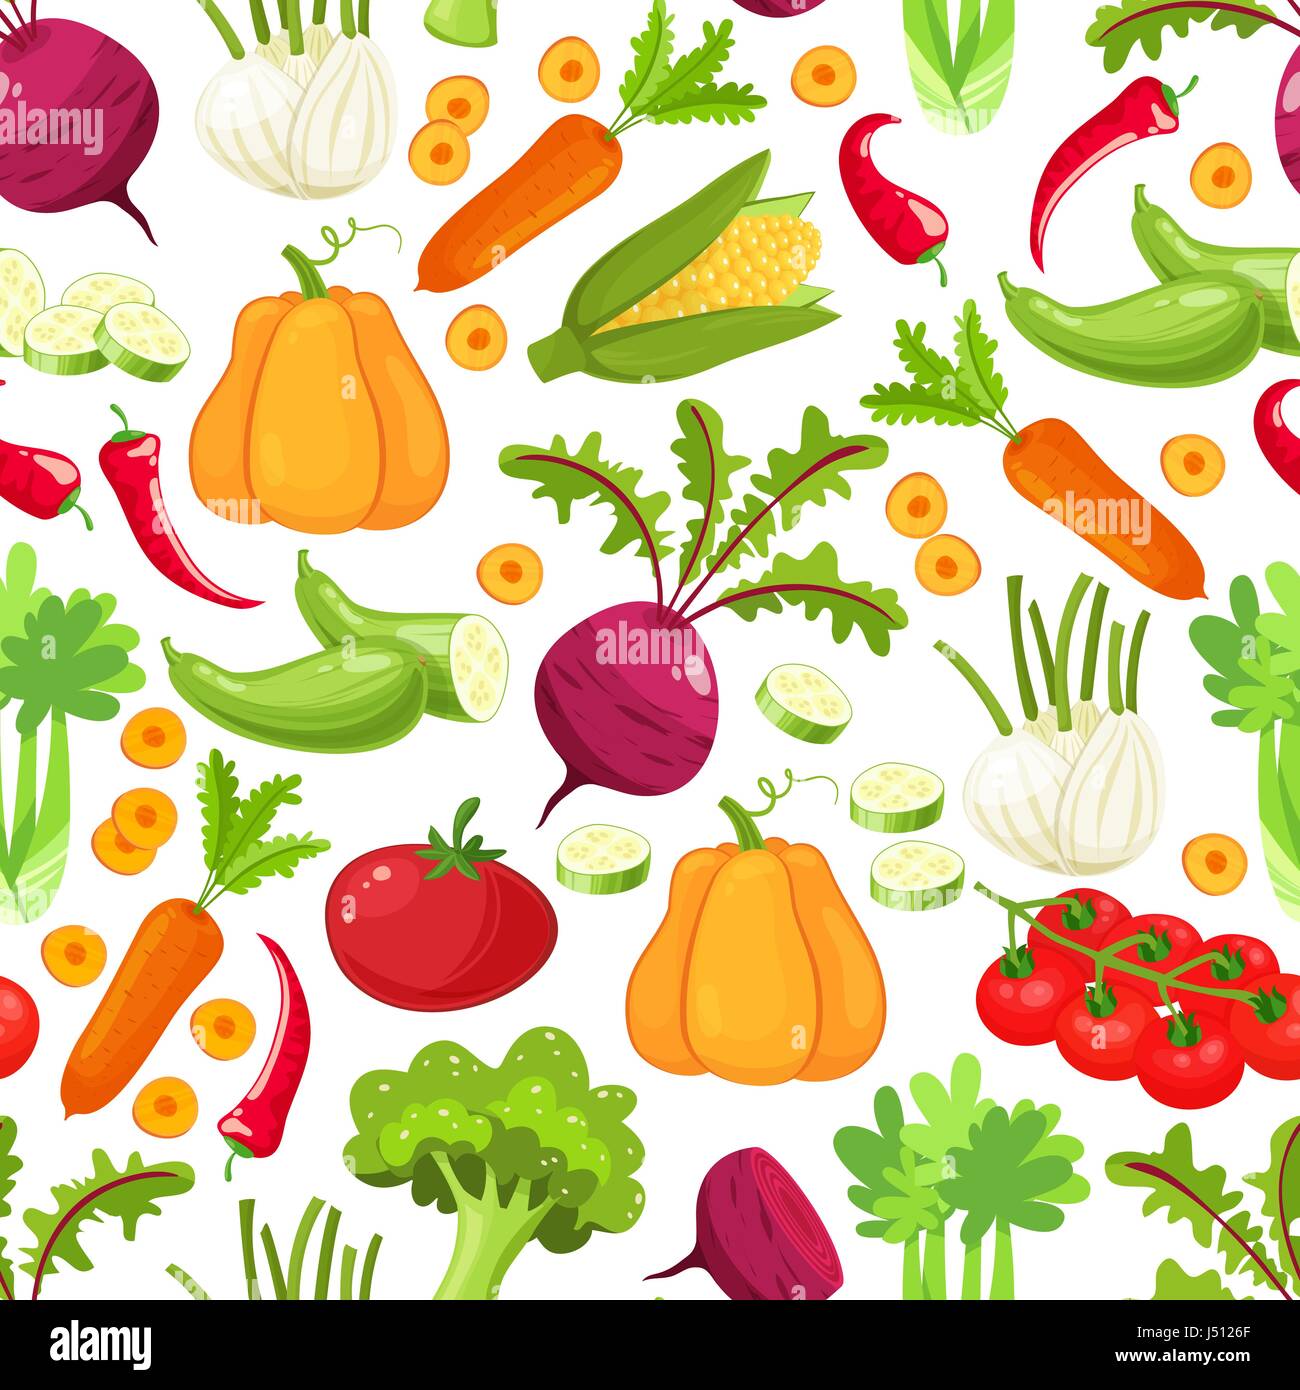 Verdure crude con pepe a fette di melanzane funghi all'aglio zucchine cipolla pomodoro cetriolo illustrazione vettoriale.Seamless pattern su un fondo bianco , illustrazioni di verdure Illustrazione Vettoriale